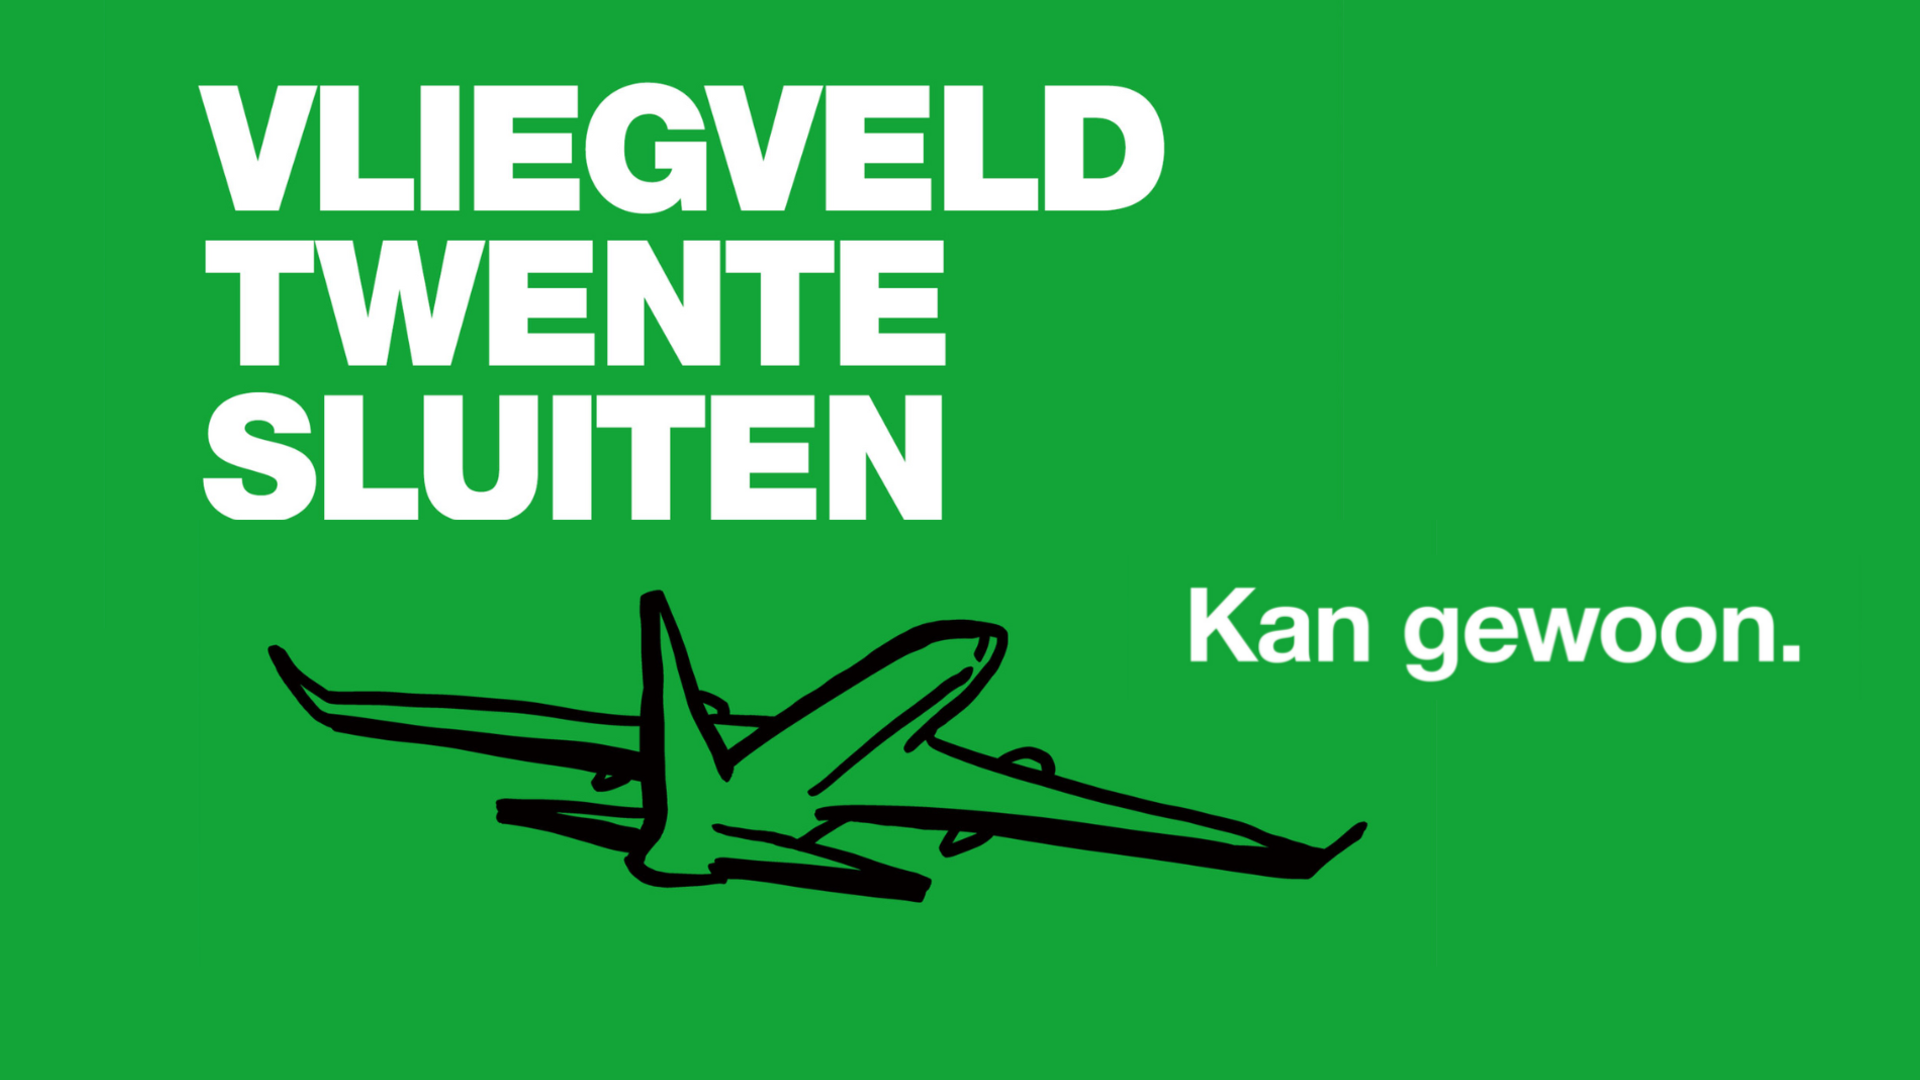 Voor een groene achtergrond staat "Vliegveld Twente sluiten. Kan gewoon'." met een tekening van een vliegtuig.